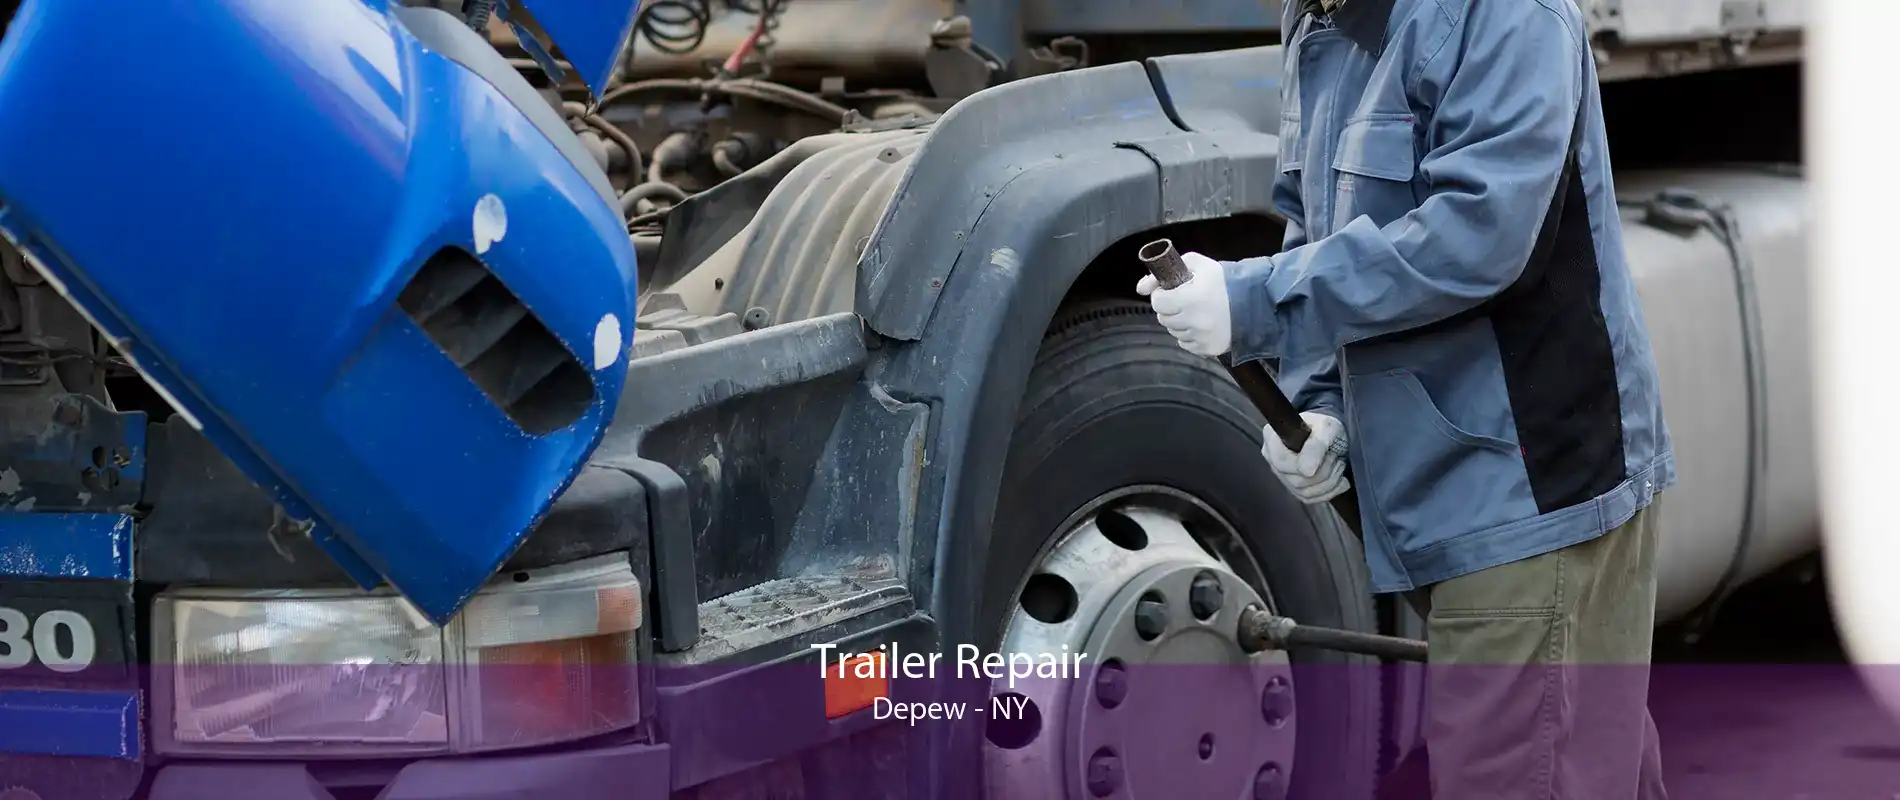 Trailer Repair Depew - NY